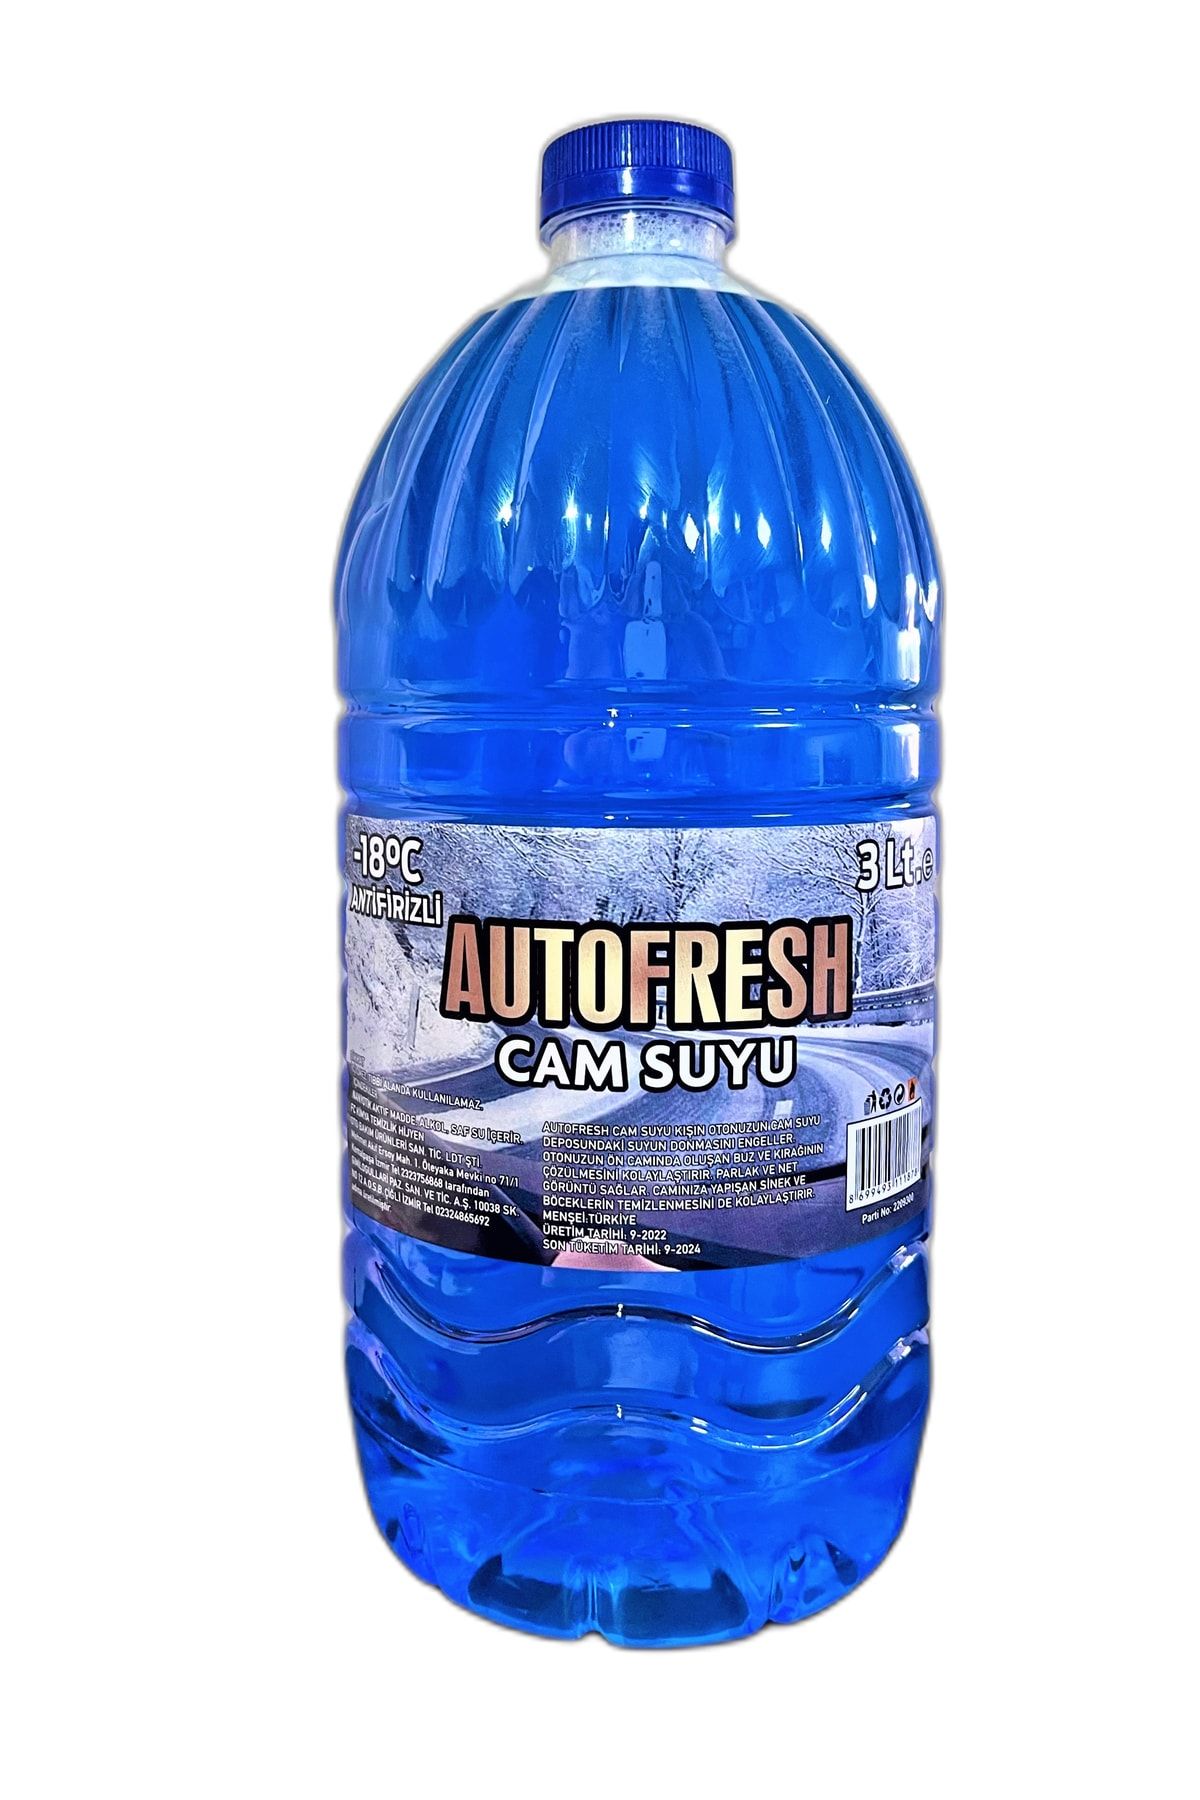 AutoFresh Auto Fresh Oto Araç Cam Suyu 3 Lt -18 Antifirizli Araba Cam Temizleyici Antifriz Kışlık Kullanım